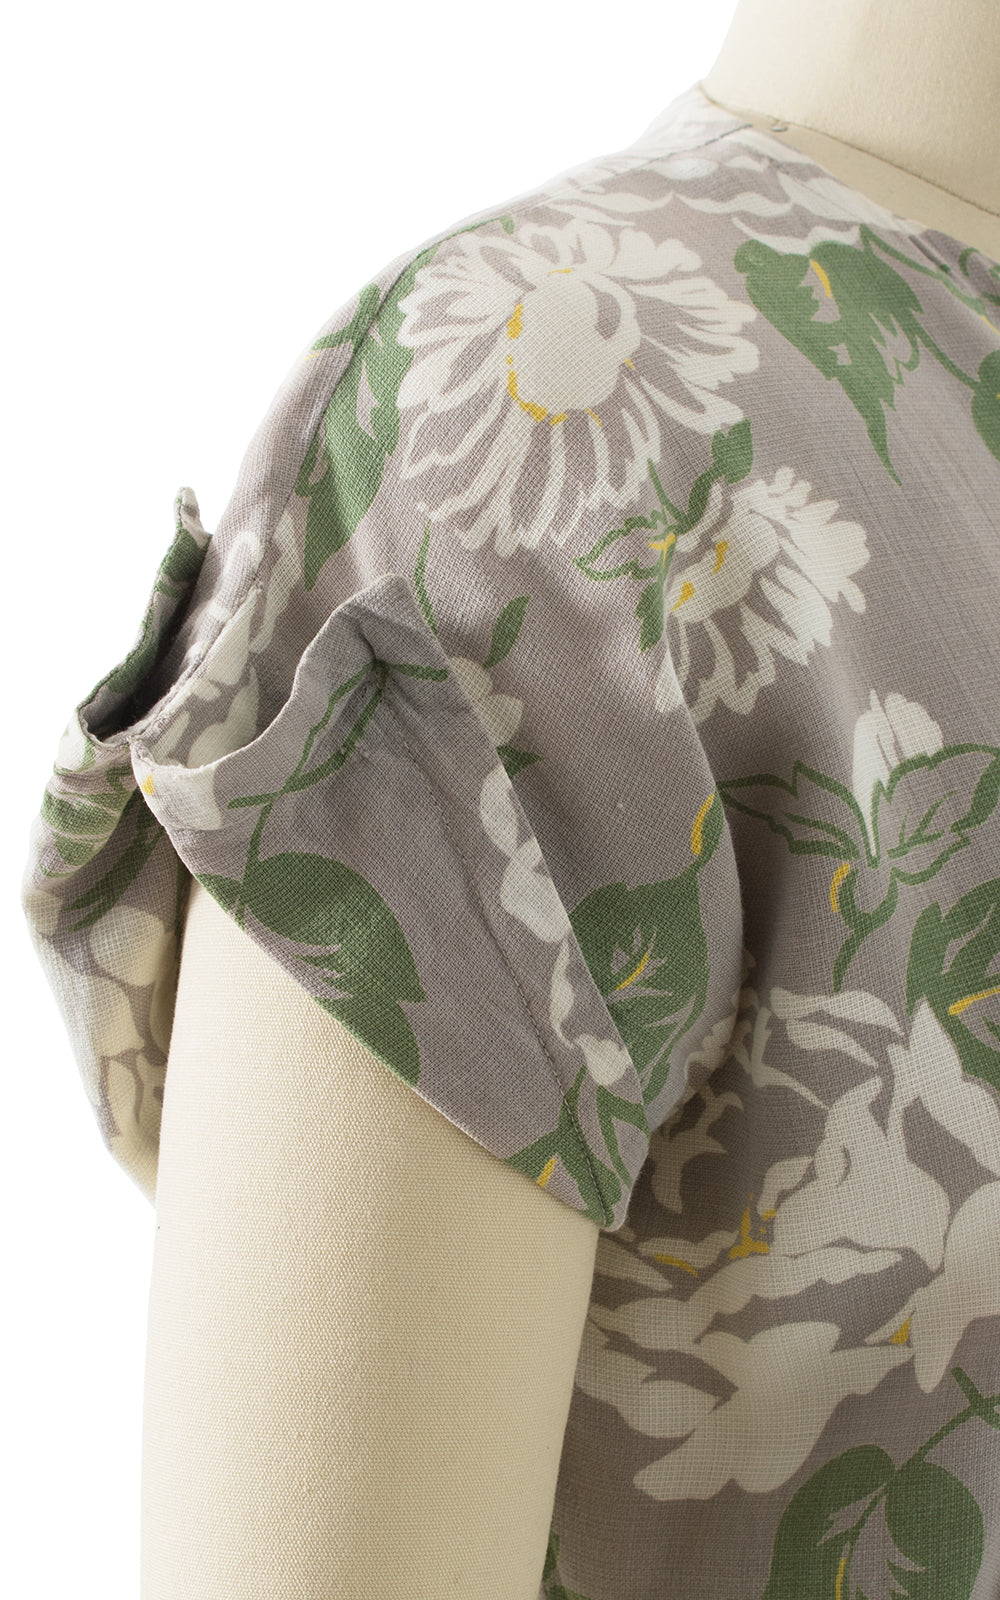 1940s Floral Cotton Shirtwaist Day Dress